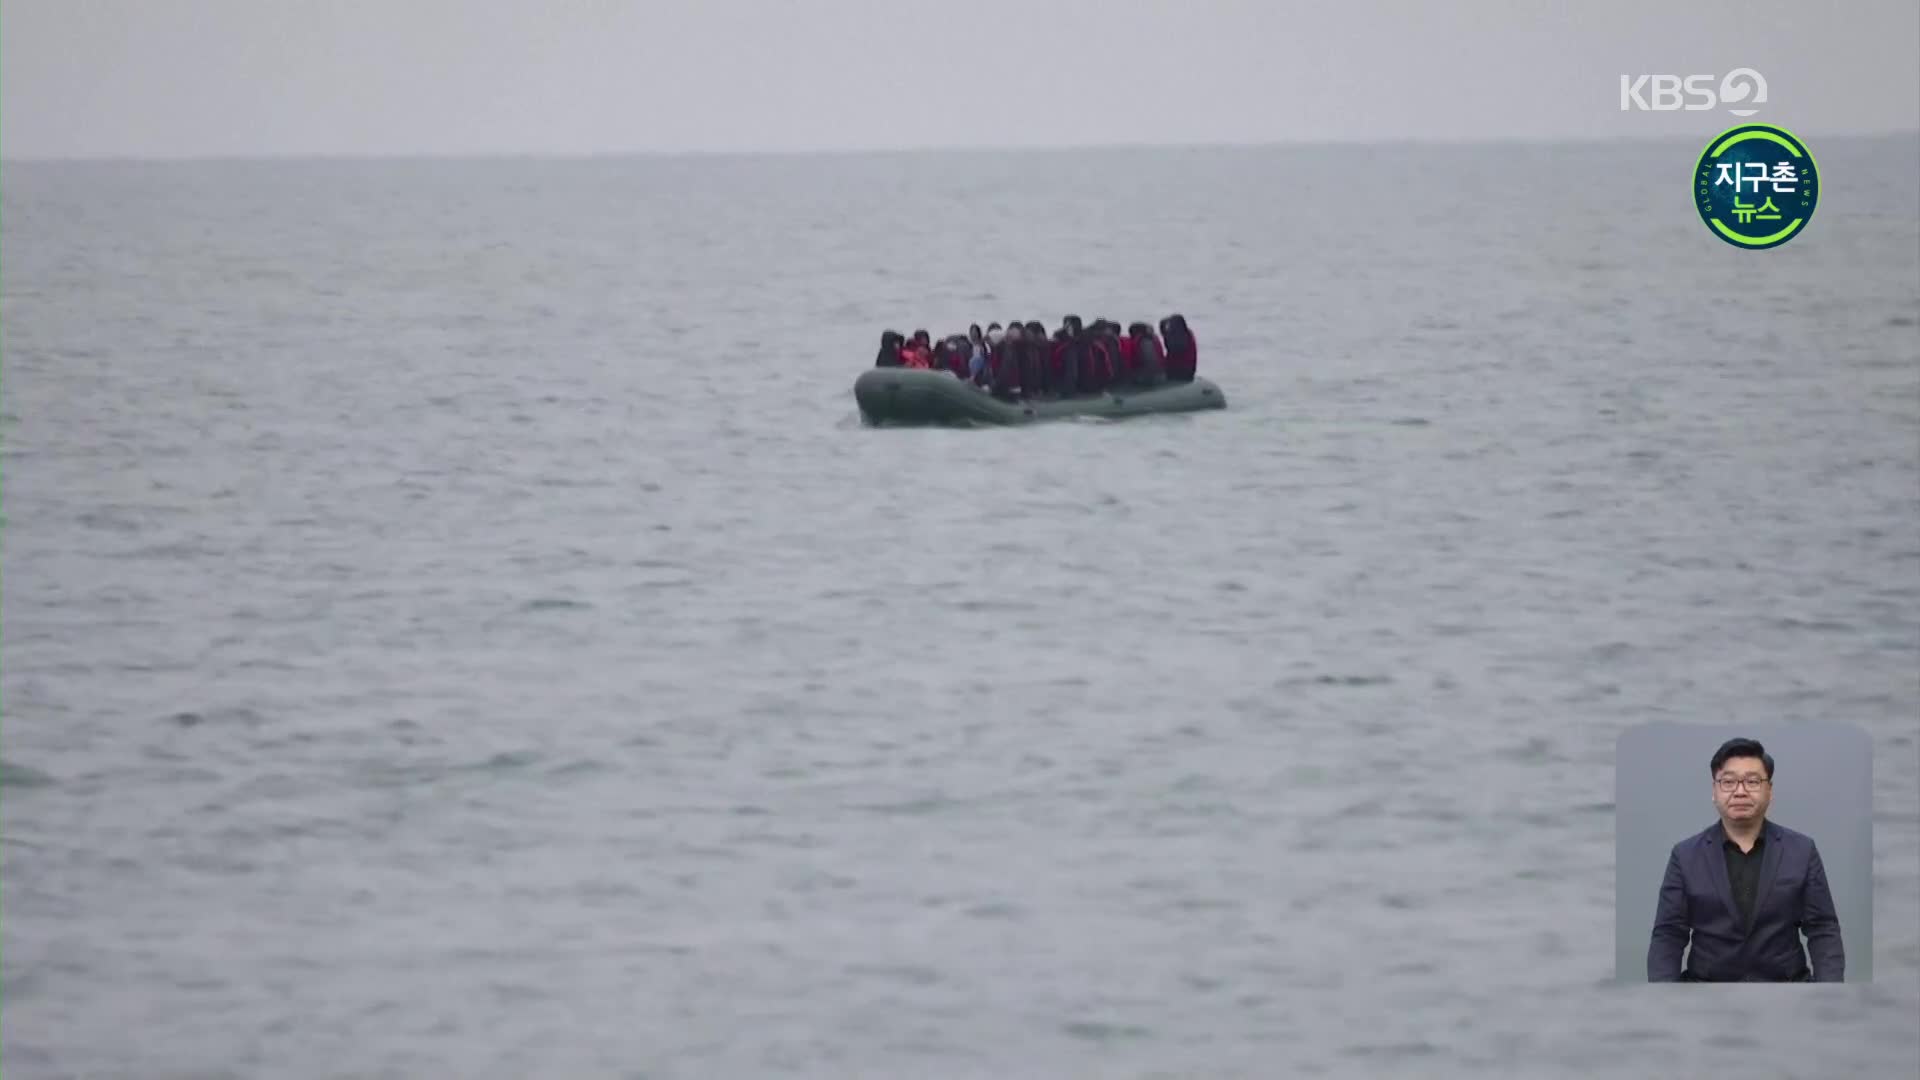 영불해협 건너던 난민 보트 전복…“30여 명 사망”